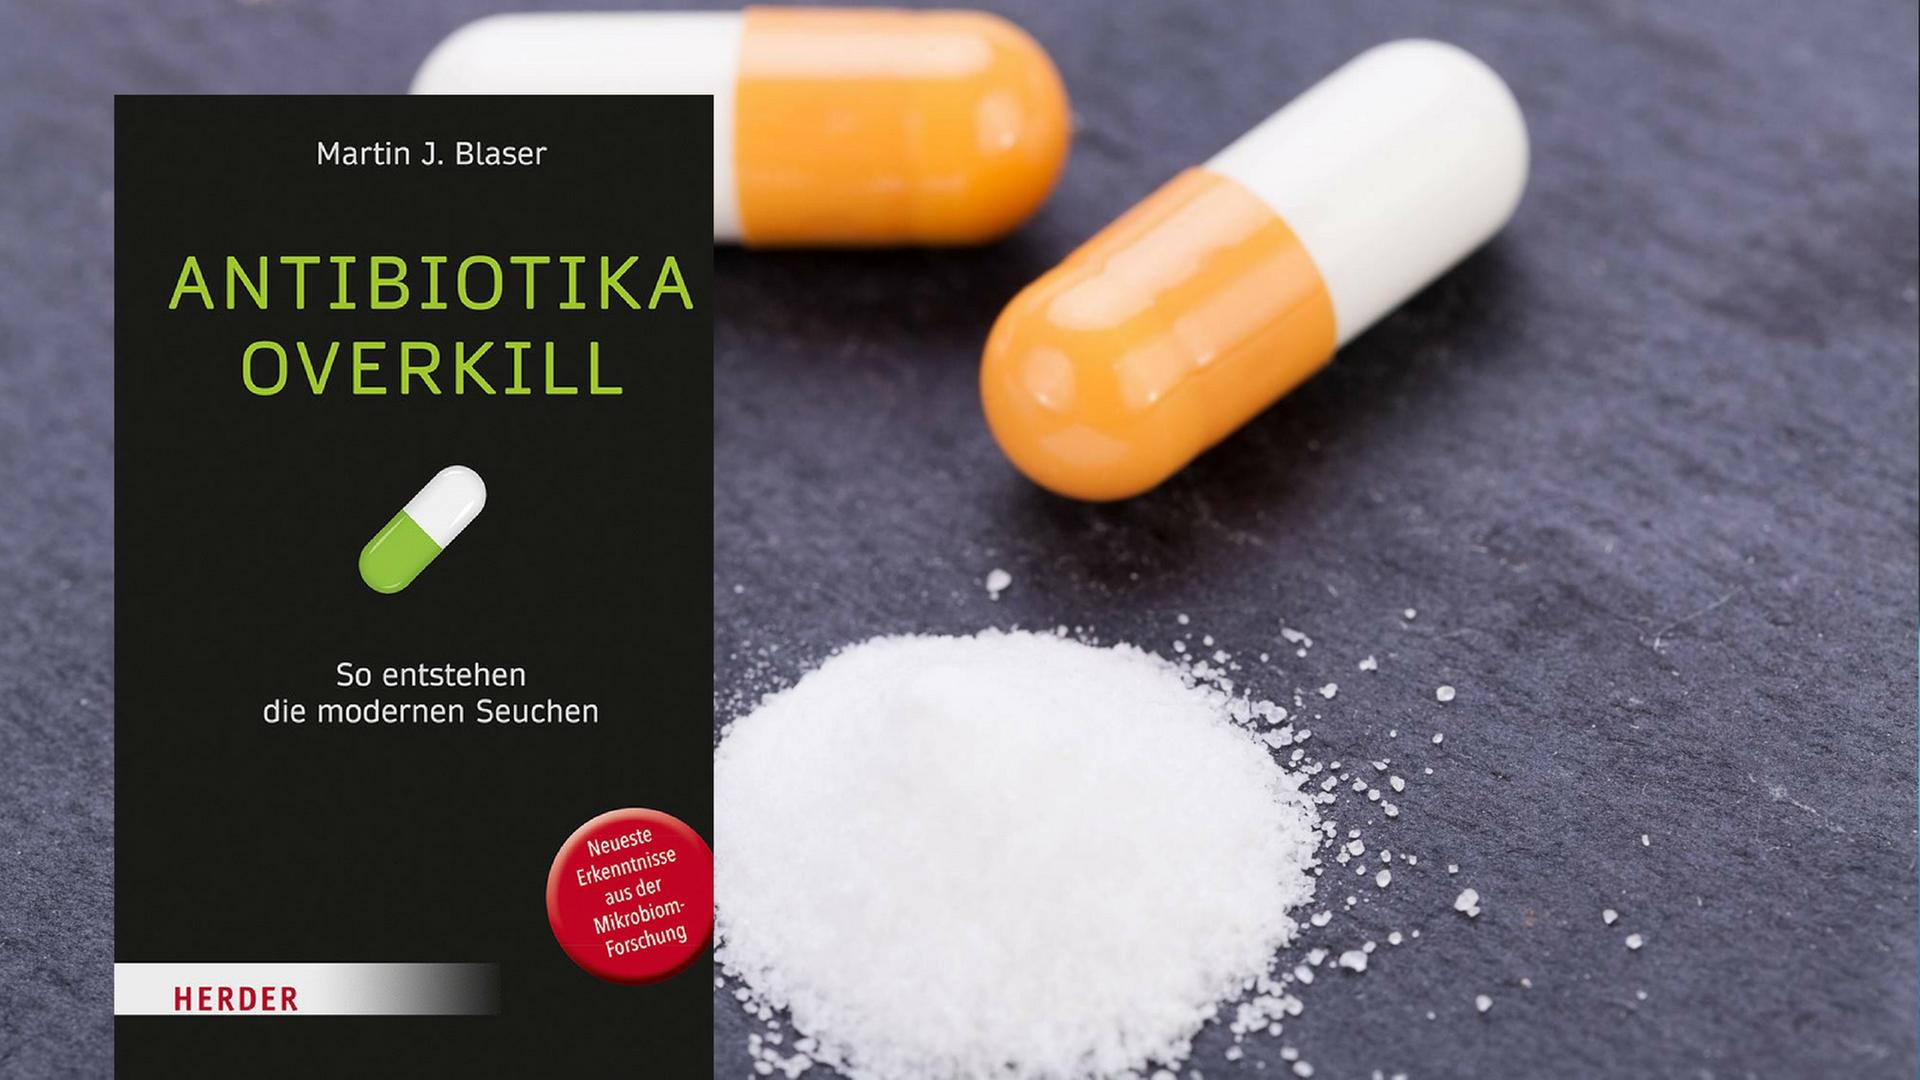 Buchcover von "Antibiotika overkill", im Hintergrund: Tabletten.